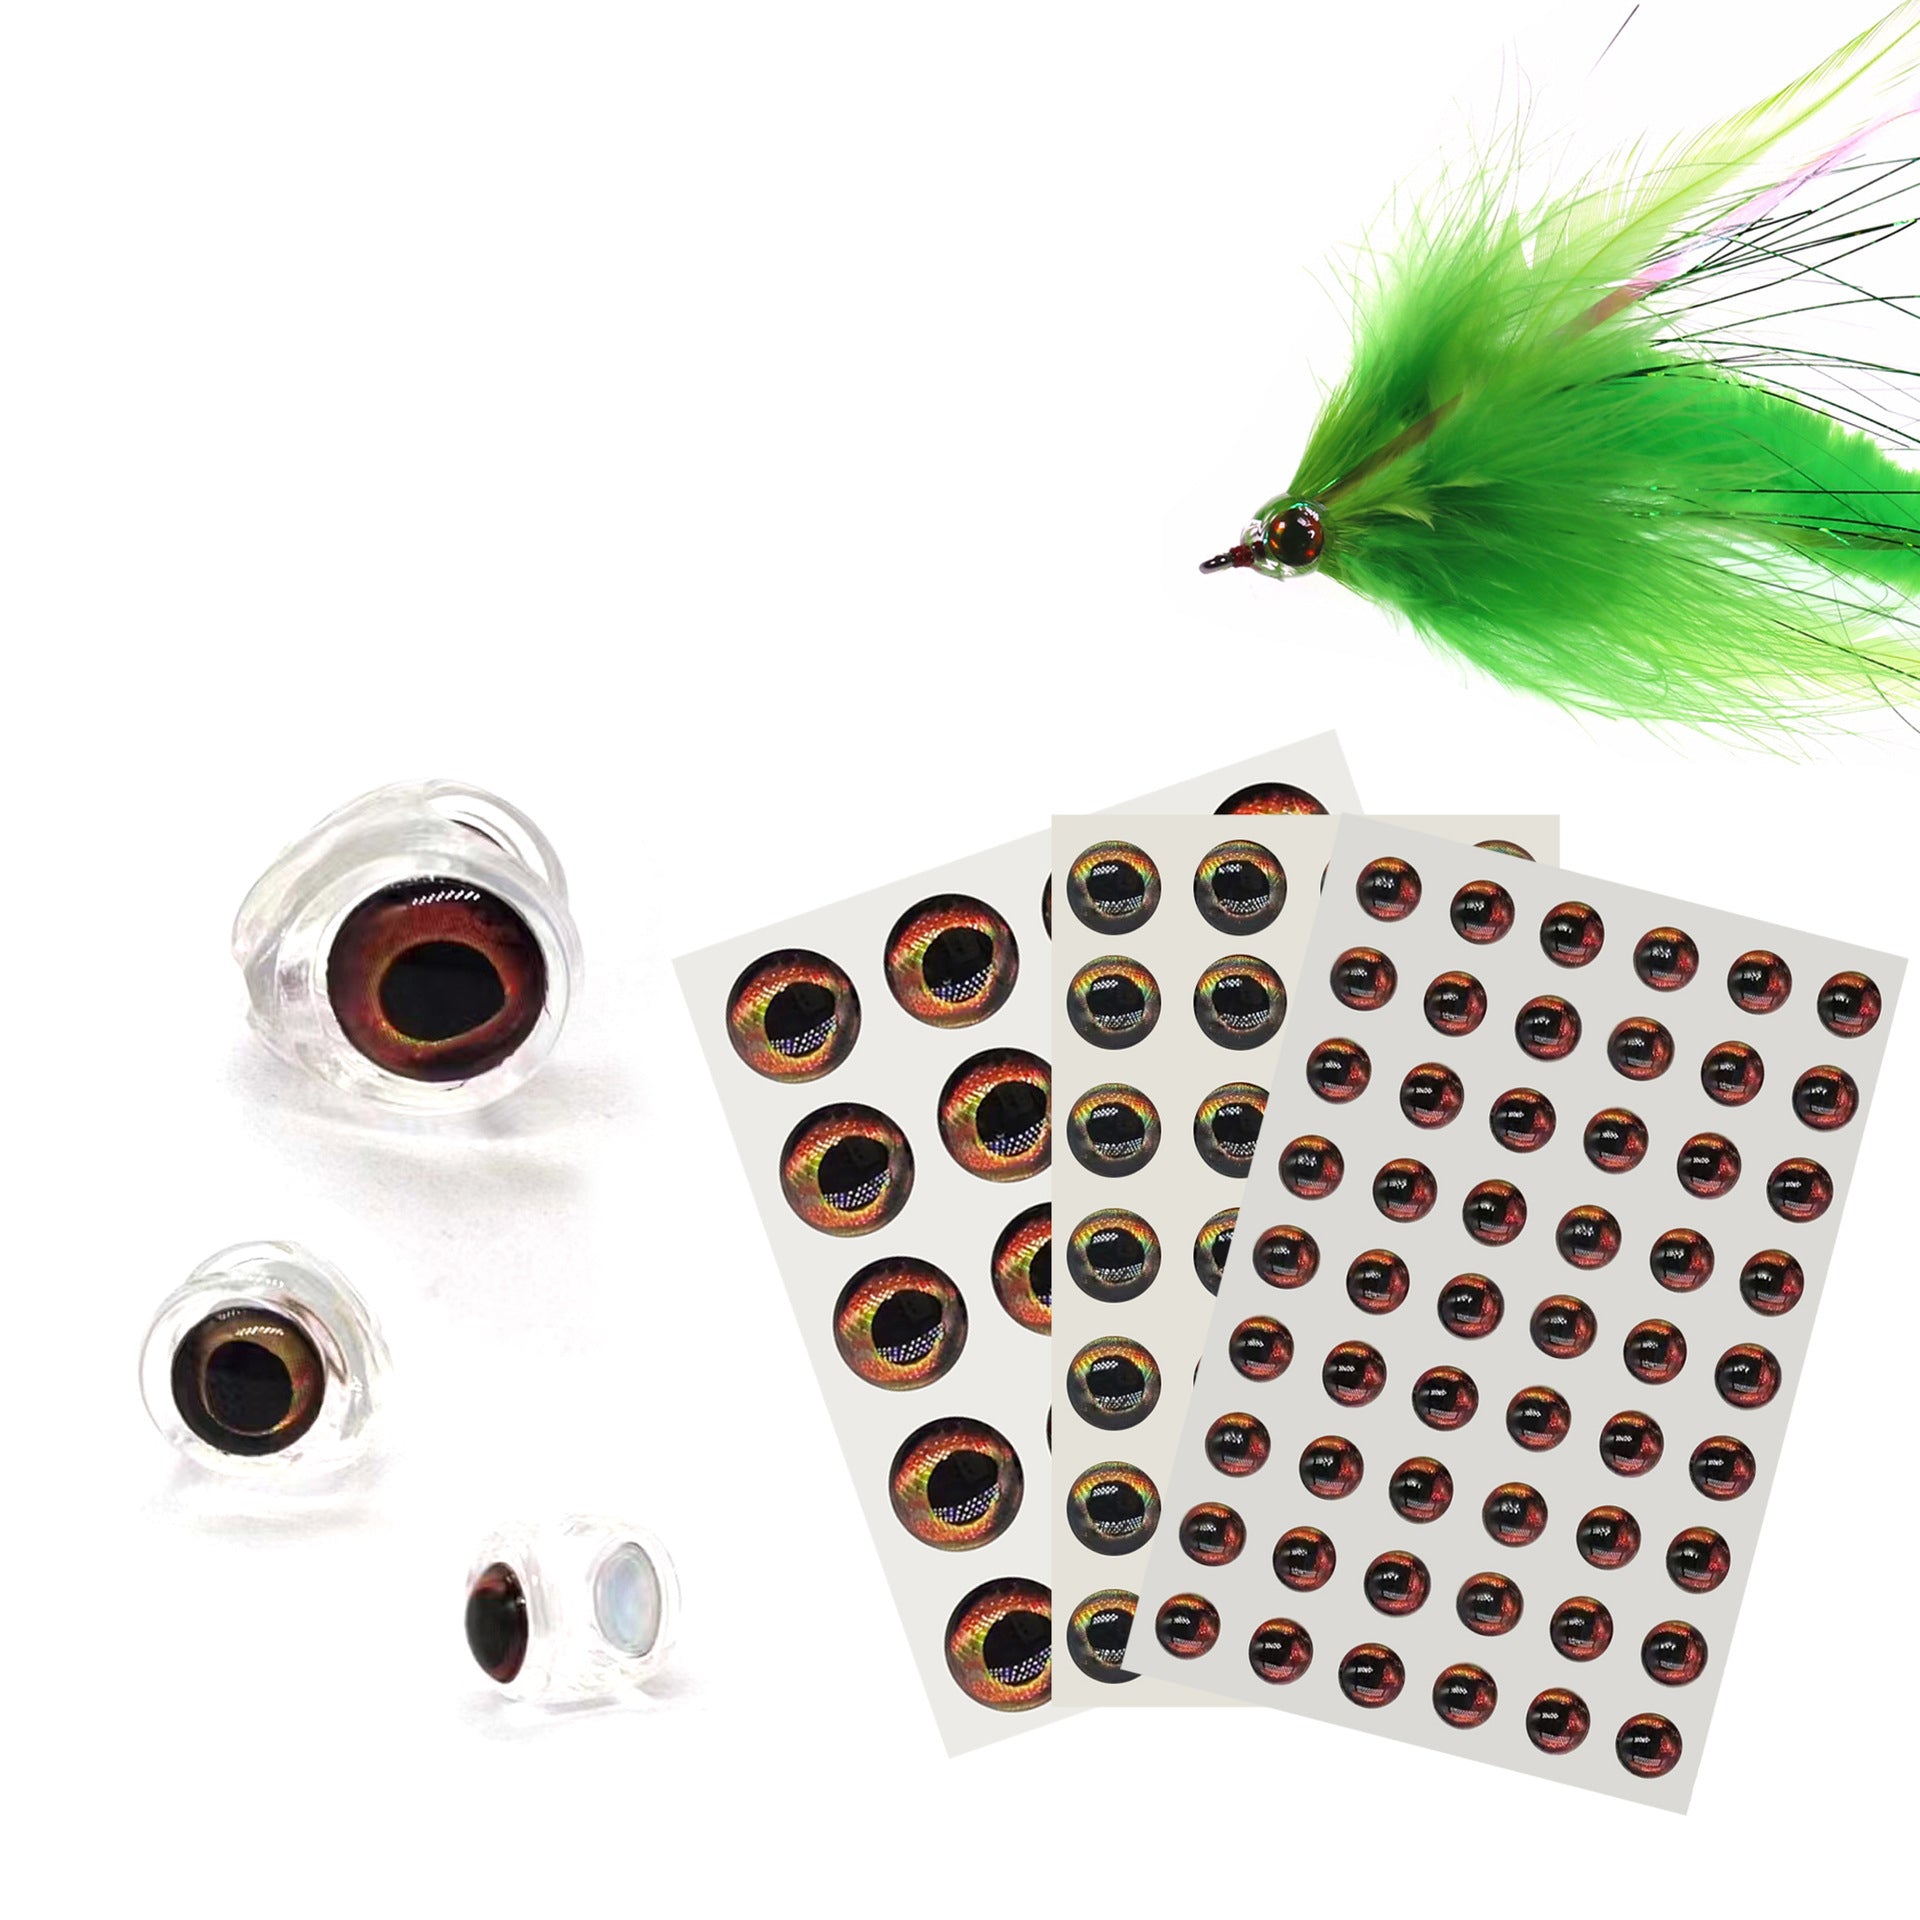 Kylebooker 10 Uds. Cabeza de calavera de pez para atar moscas, Material de 4mm/6mm/8mm, señuelo para atar cebo, hacer pesca con mosca con cebo con ojos